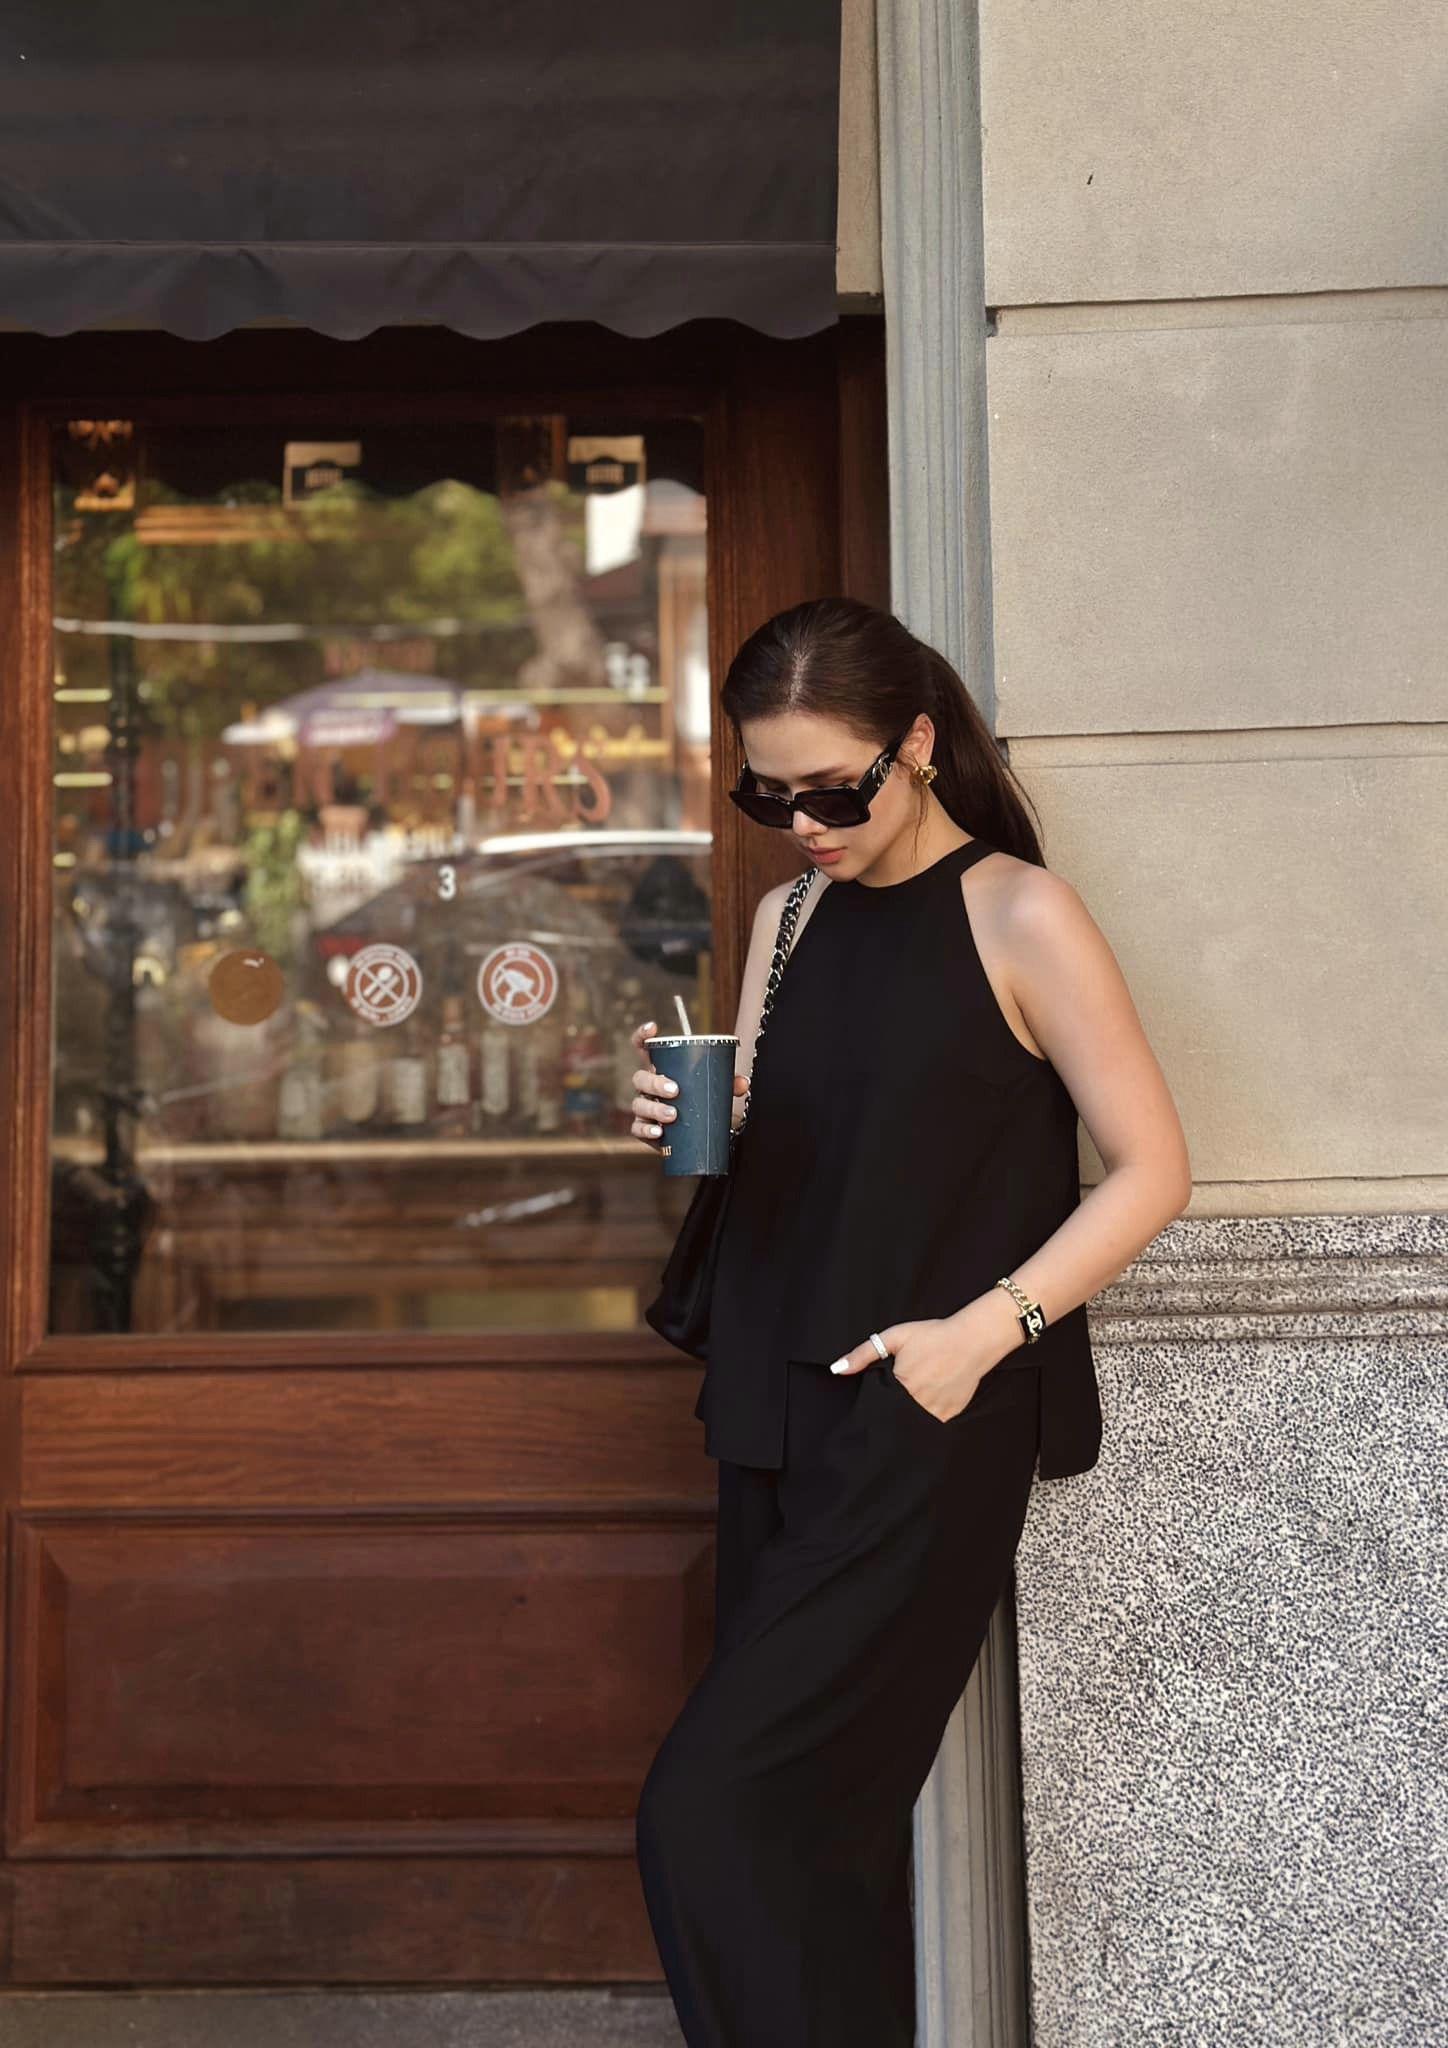 Phanh Lee chọn lựa trang phục đơn giản, thể hiện được sự nữ quyền bằng phom dáng chuẩn mực, phối kèm những món phụ kiện từ nhà mốt Chanel hàng trăm triệu đồng.